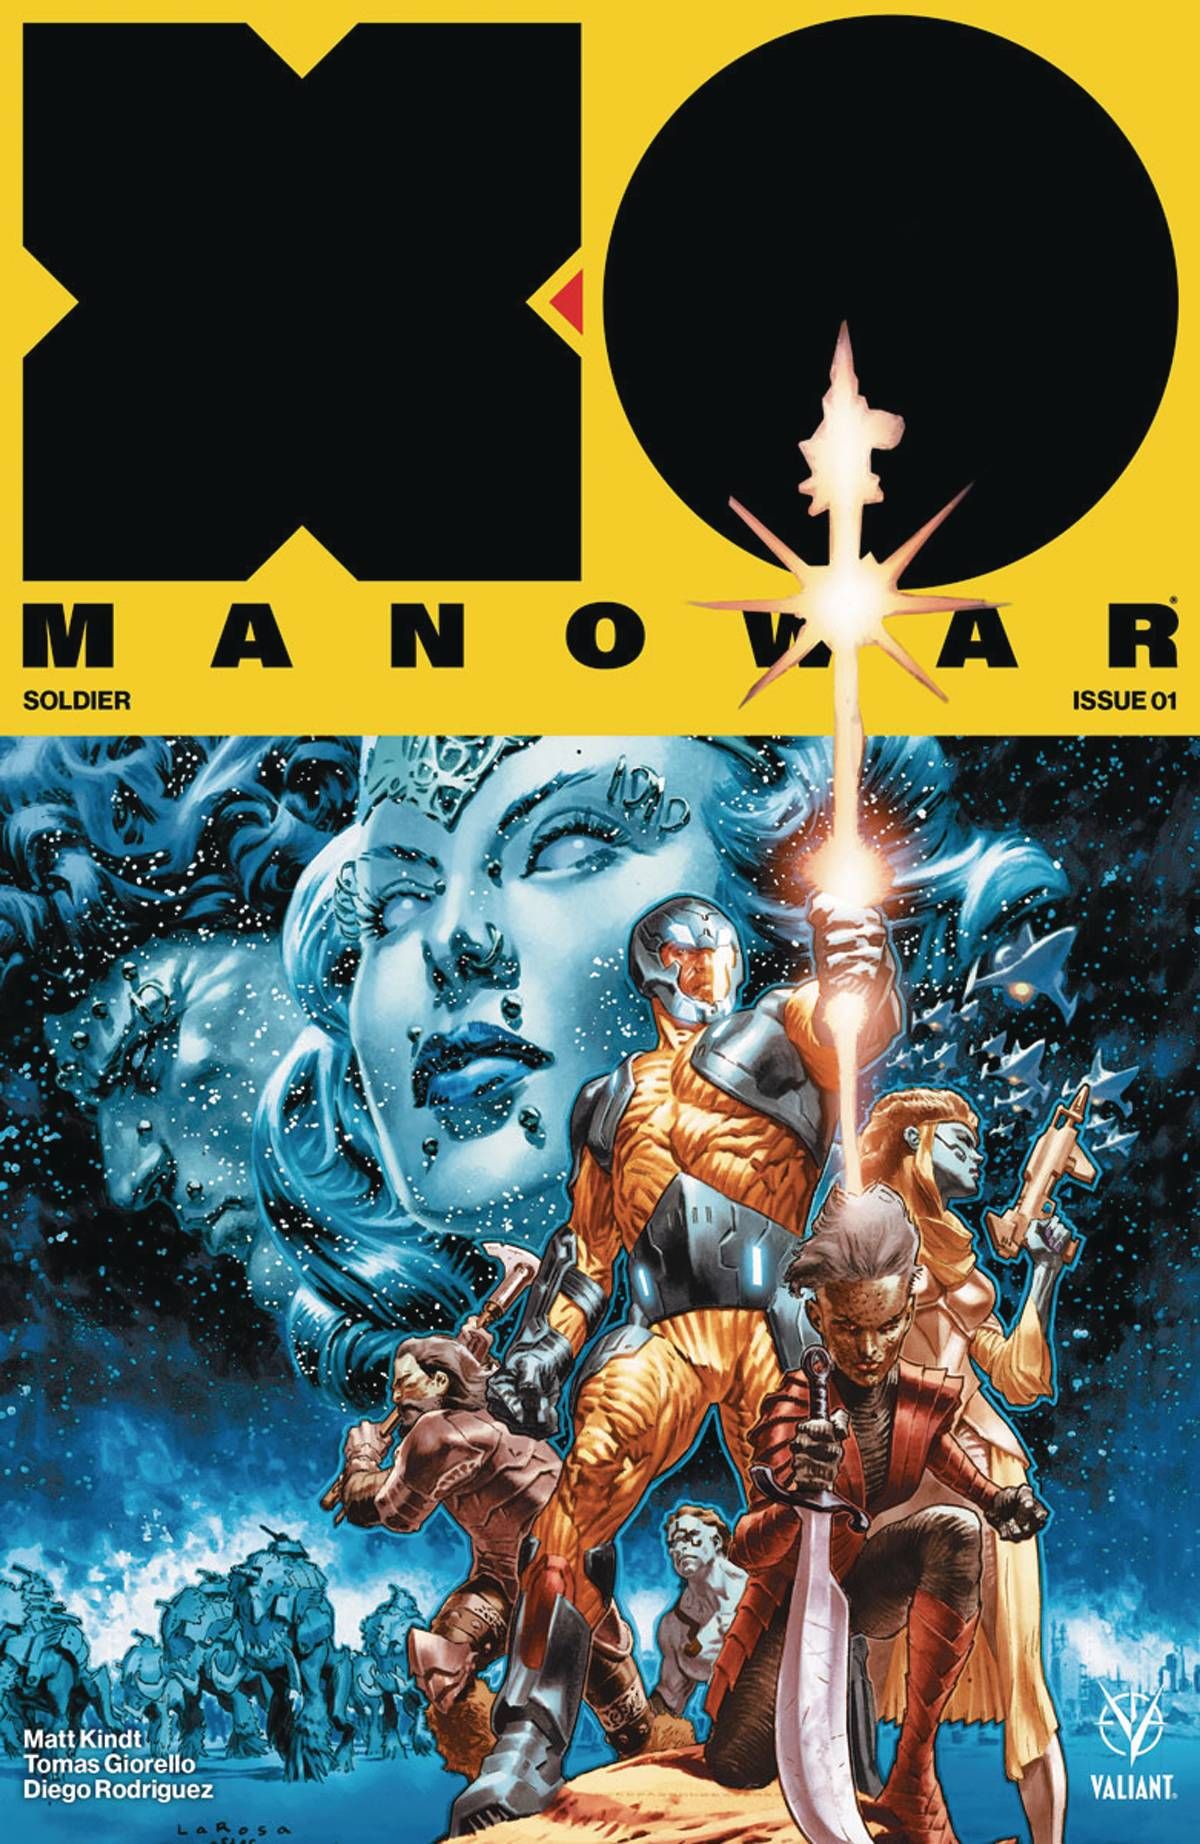 X-O Manowar #1 Comic